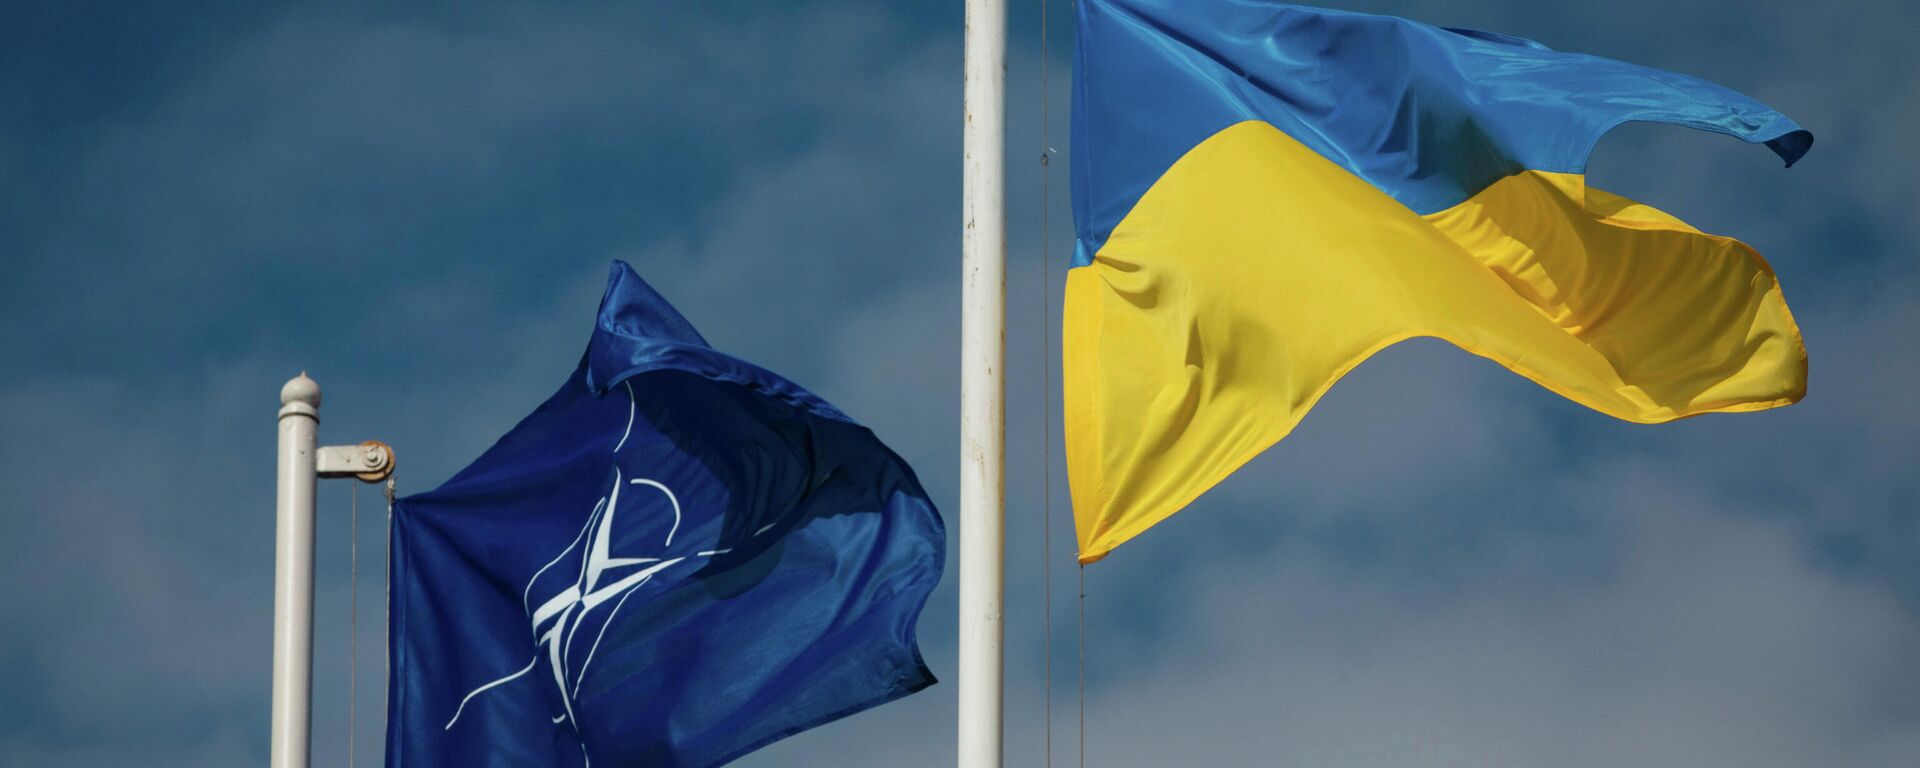 Национальный флаг Украины и флаг Организации Североатлантического договора (НАТО) - Sputnik Латвия, 1920, 16.06.2021